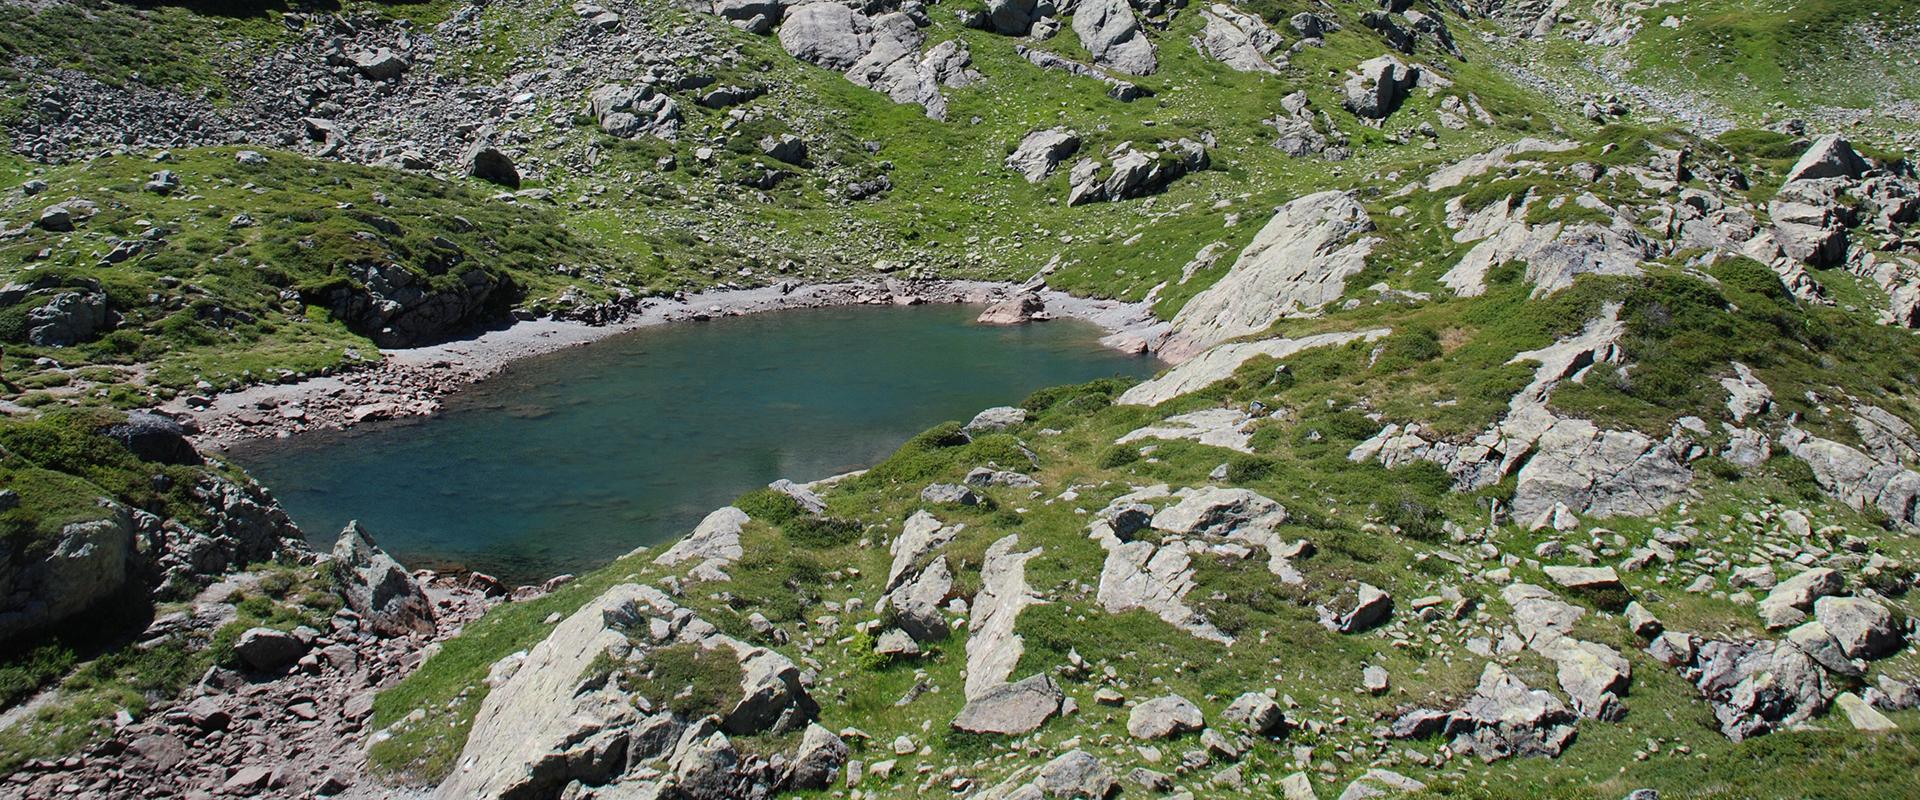 Le Lac des Chéserys, Haute-Savoie